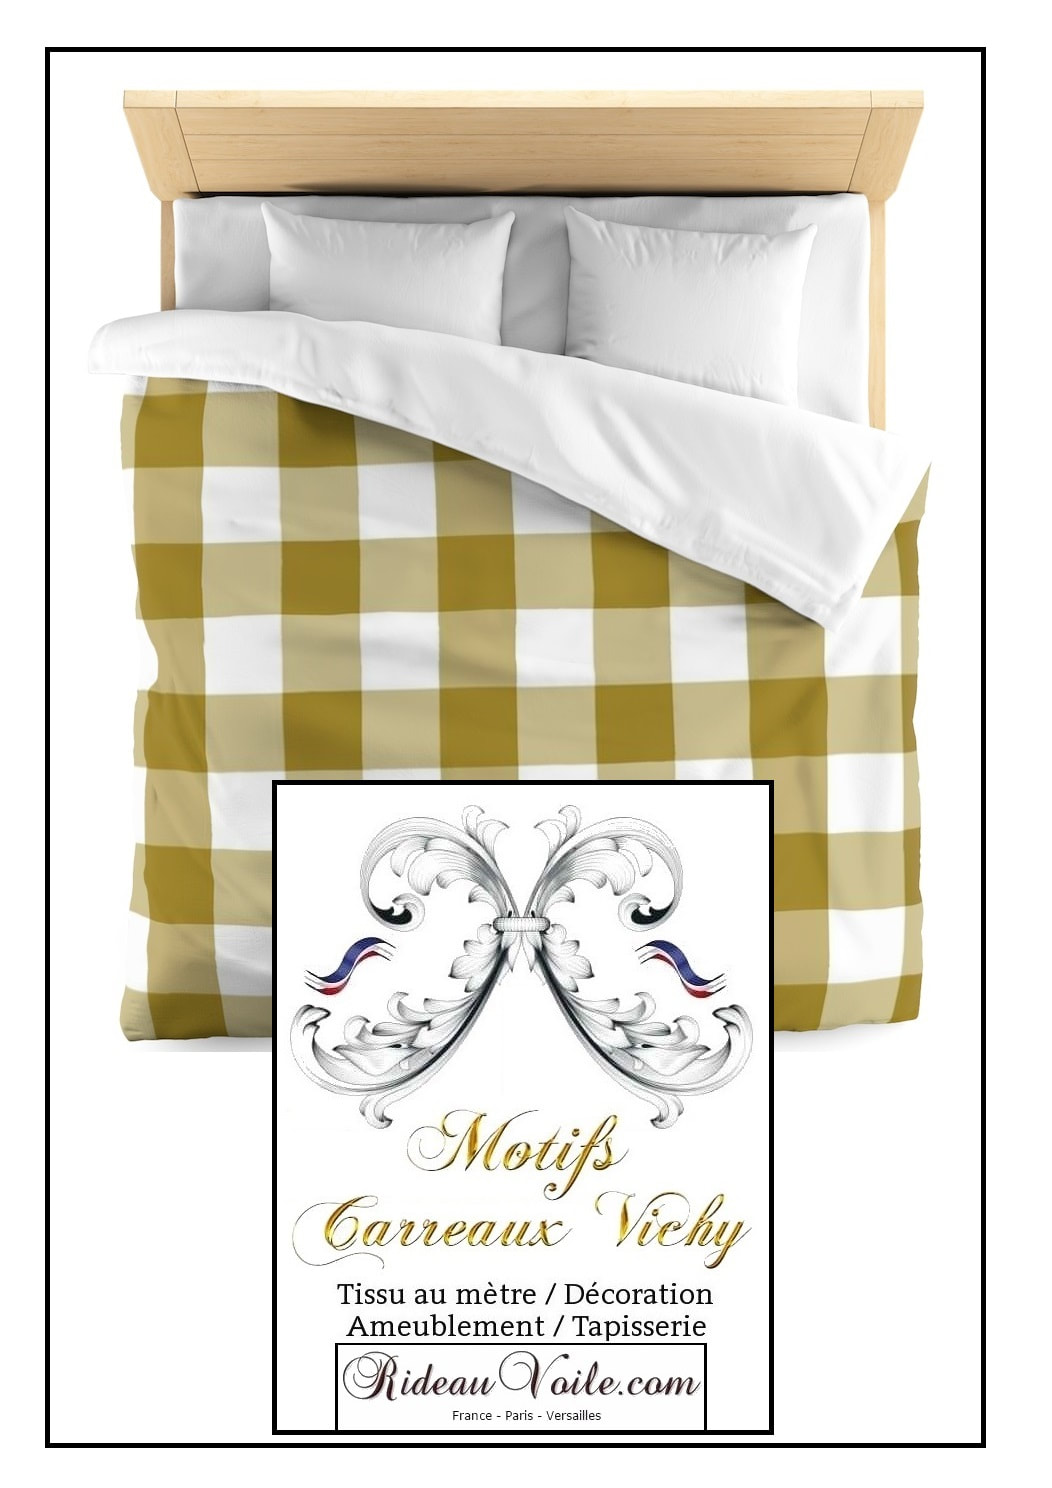 moka marron beige camel motif carré motif housse de couette tissu ameublement lit linge carreaux vichy blanc sur mesure au mètre